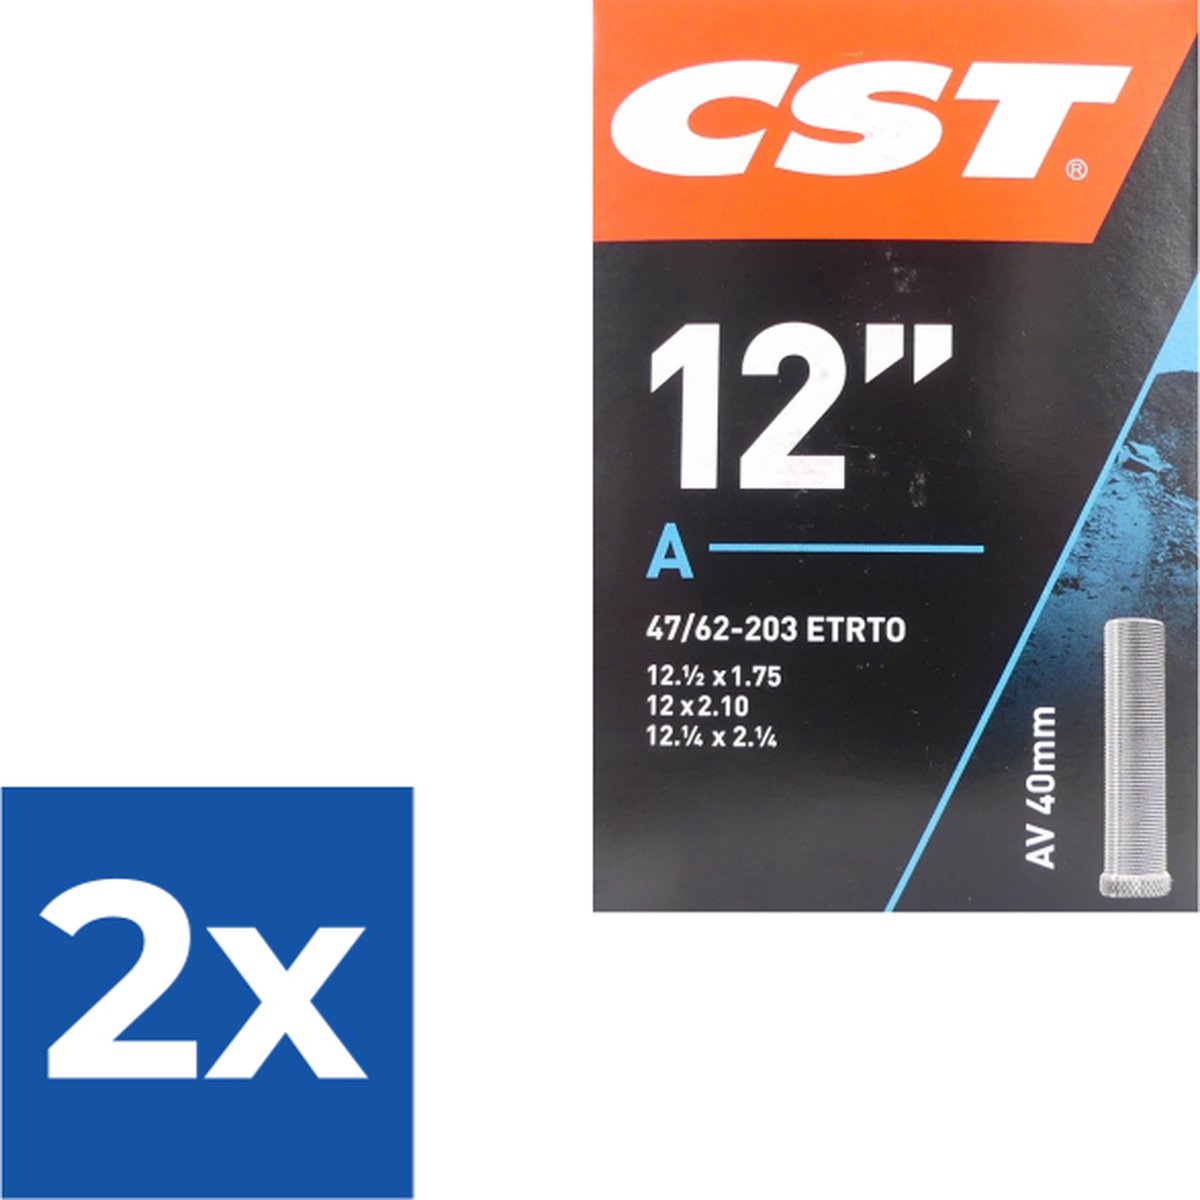 Binnenband CST AV40 12 ½ x 2 ¼ / 47/62-203 - Voordeelverpakking 2 stuks